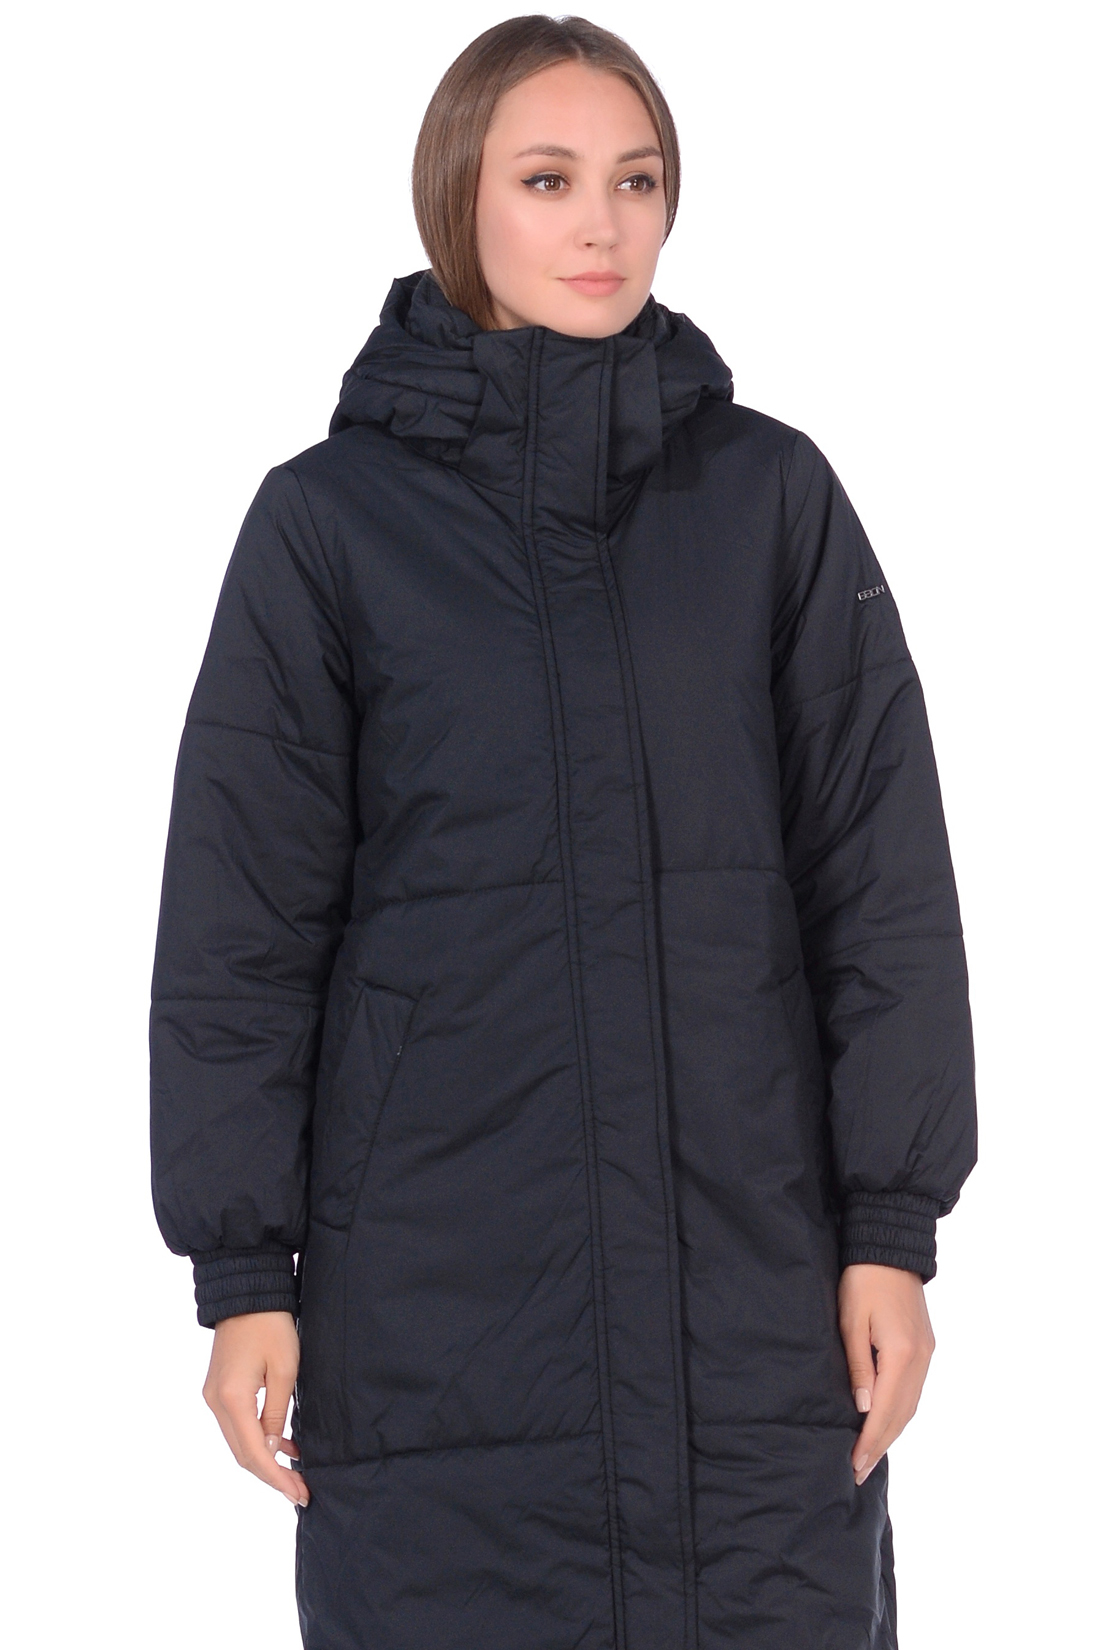 Куртка с молниями по бокам (арт. baon B038530), размер L, цвет черный Куртка с молниями по бокам (арт. baon B038530) - фото 5